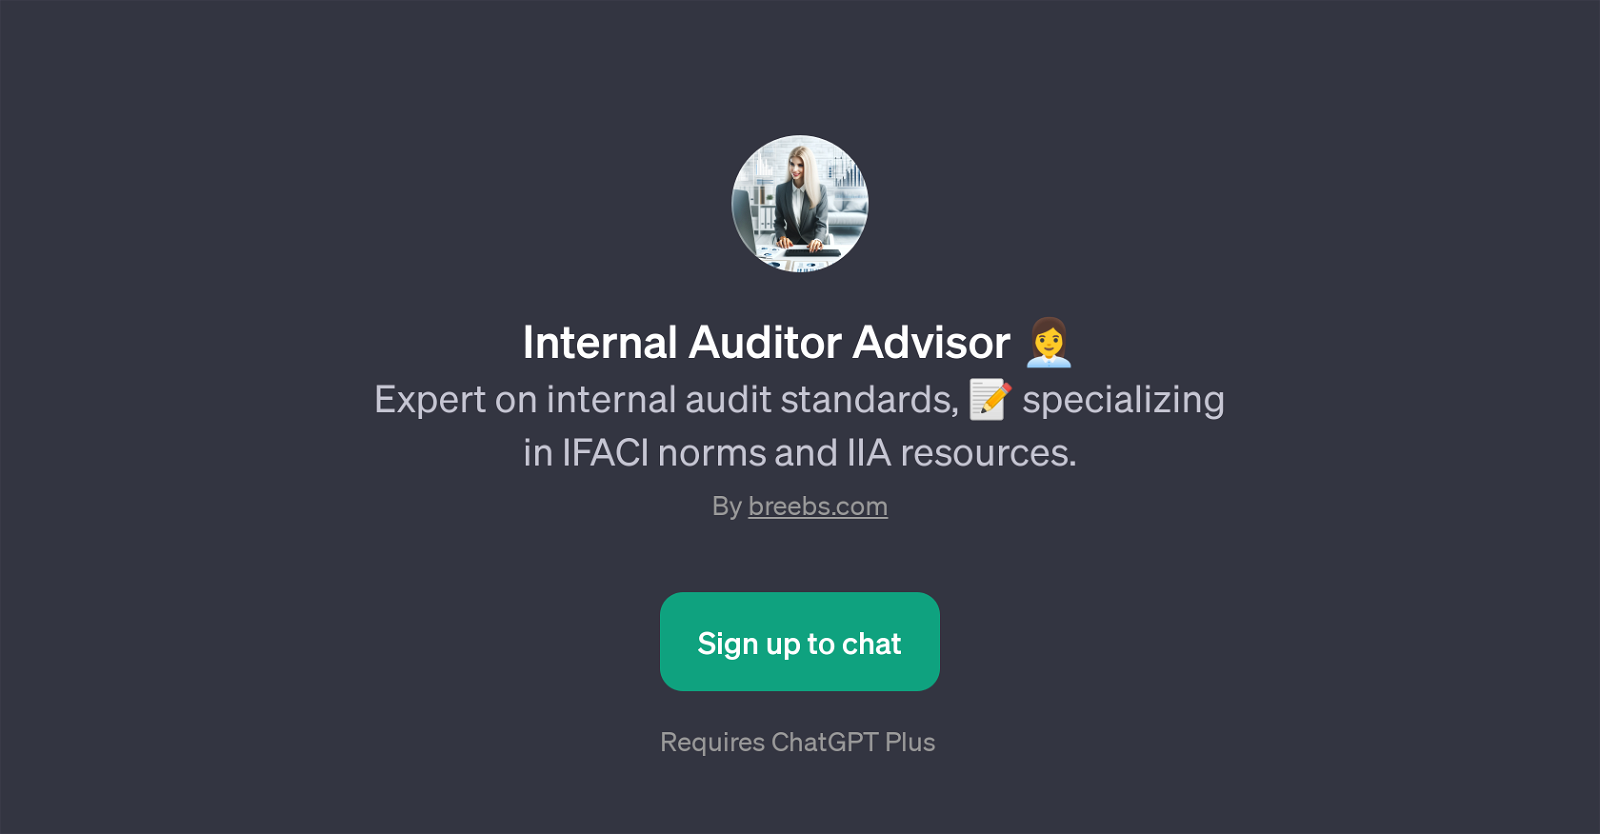 Internal Auditor Advisor website